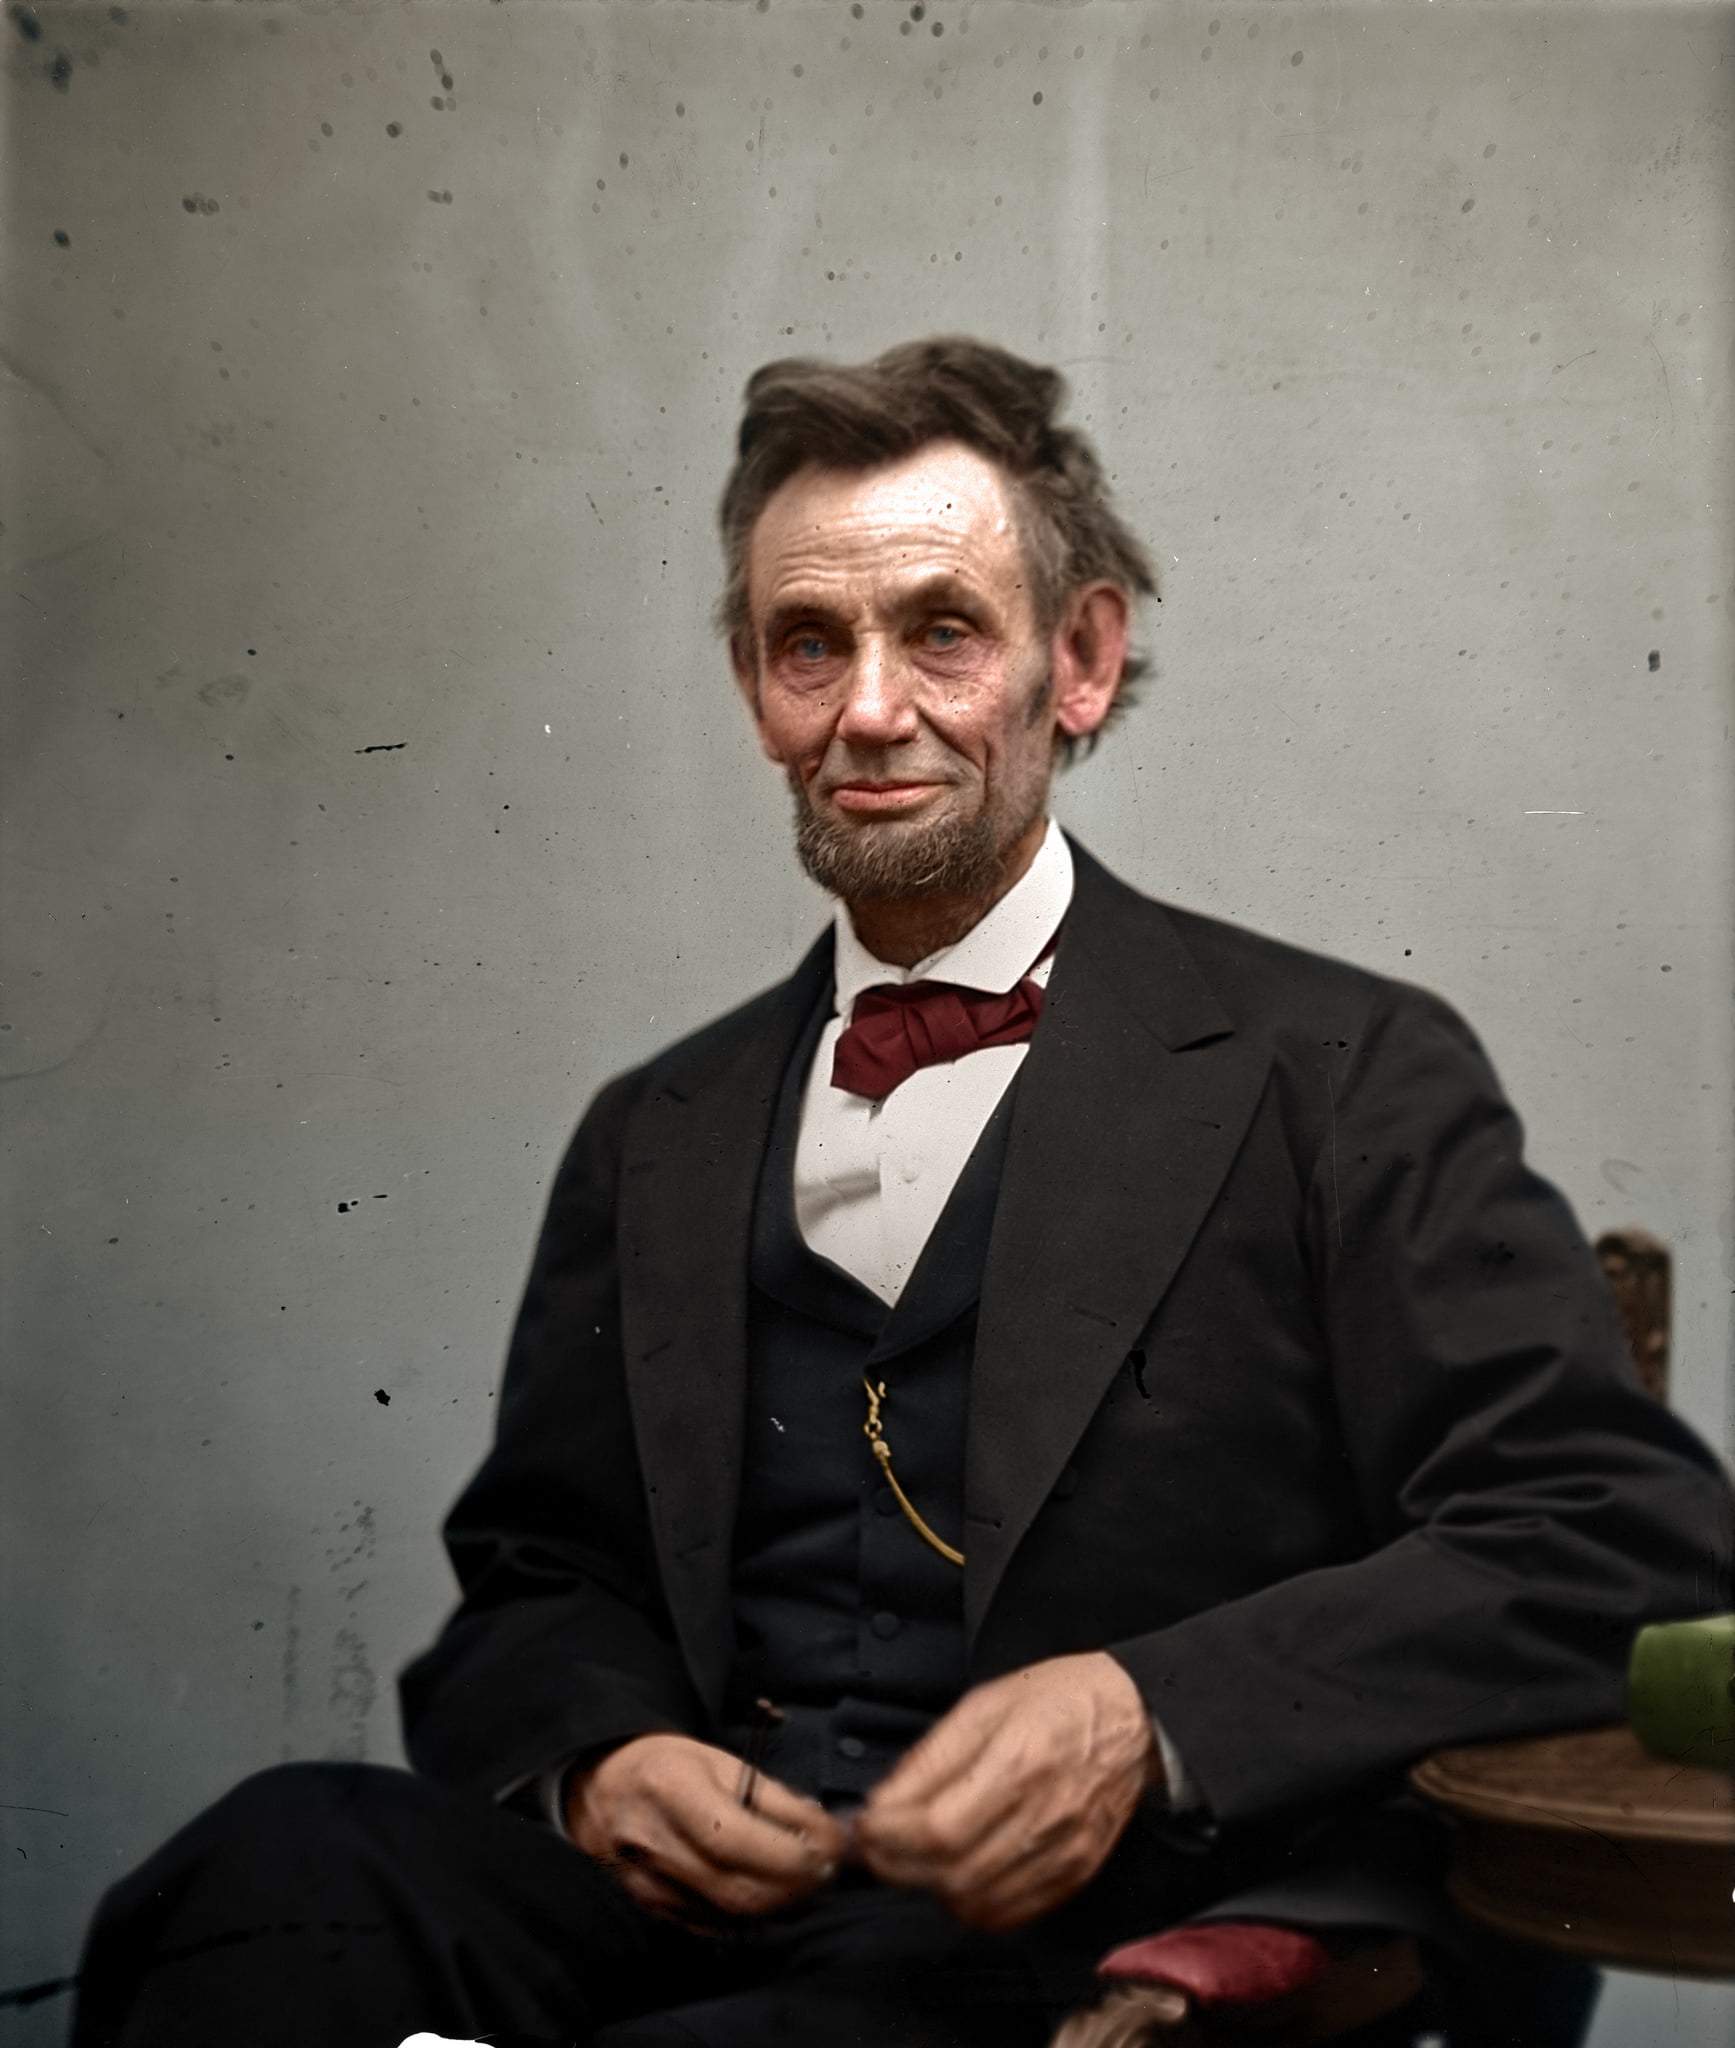 Abraham Lincoln par Alexander Gardner, vers la fin de la Guerre de Sécession, février 1865